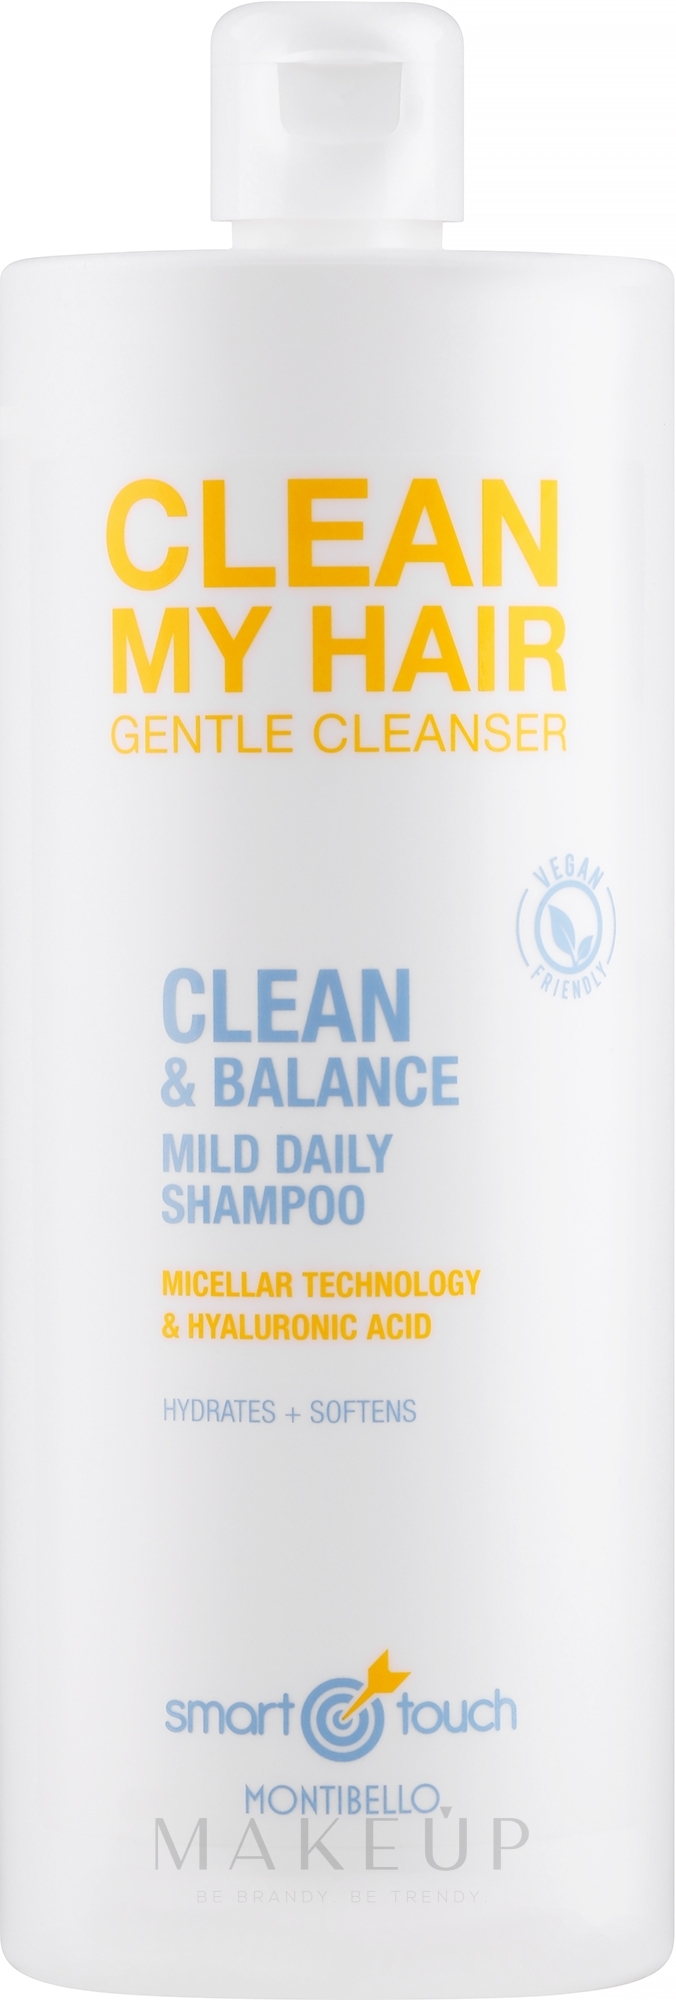 Mizellenshampoo mit Hyaluronsäure - Montibello Smart Touch Clean My Hair — Bild 1000 ml